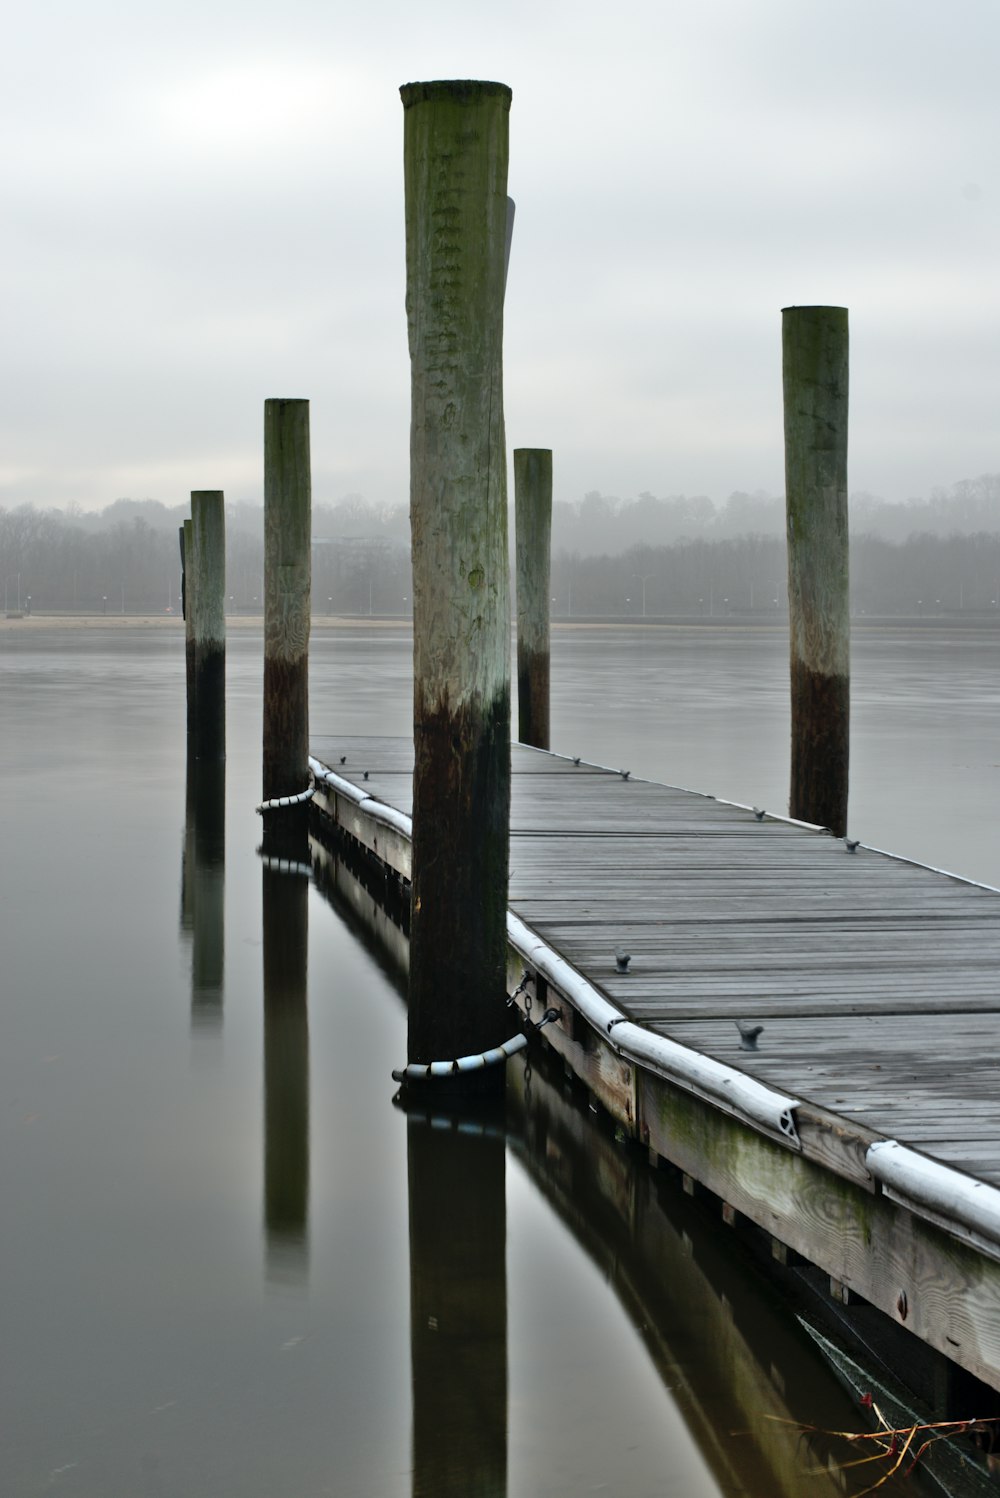 brown wooden dock photo across body of water